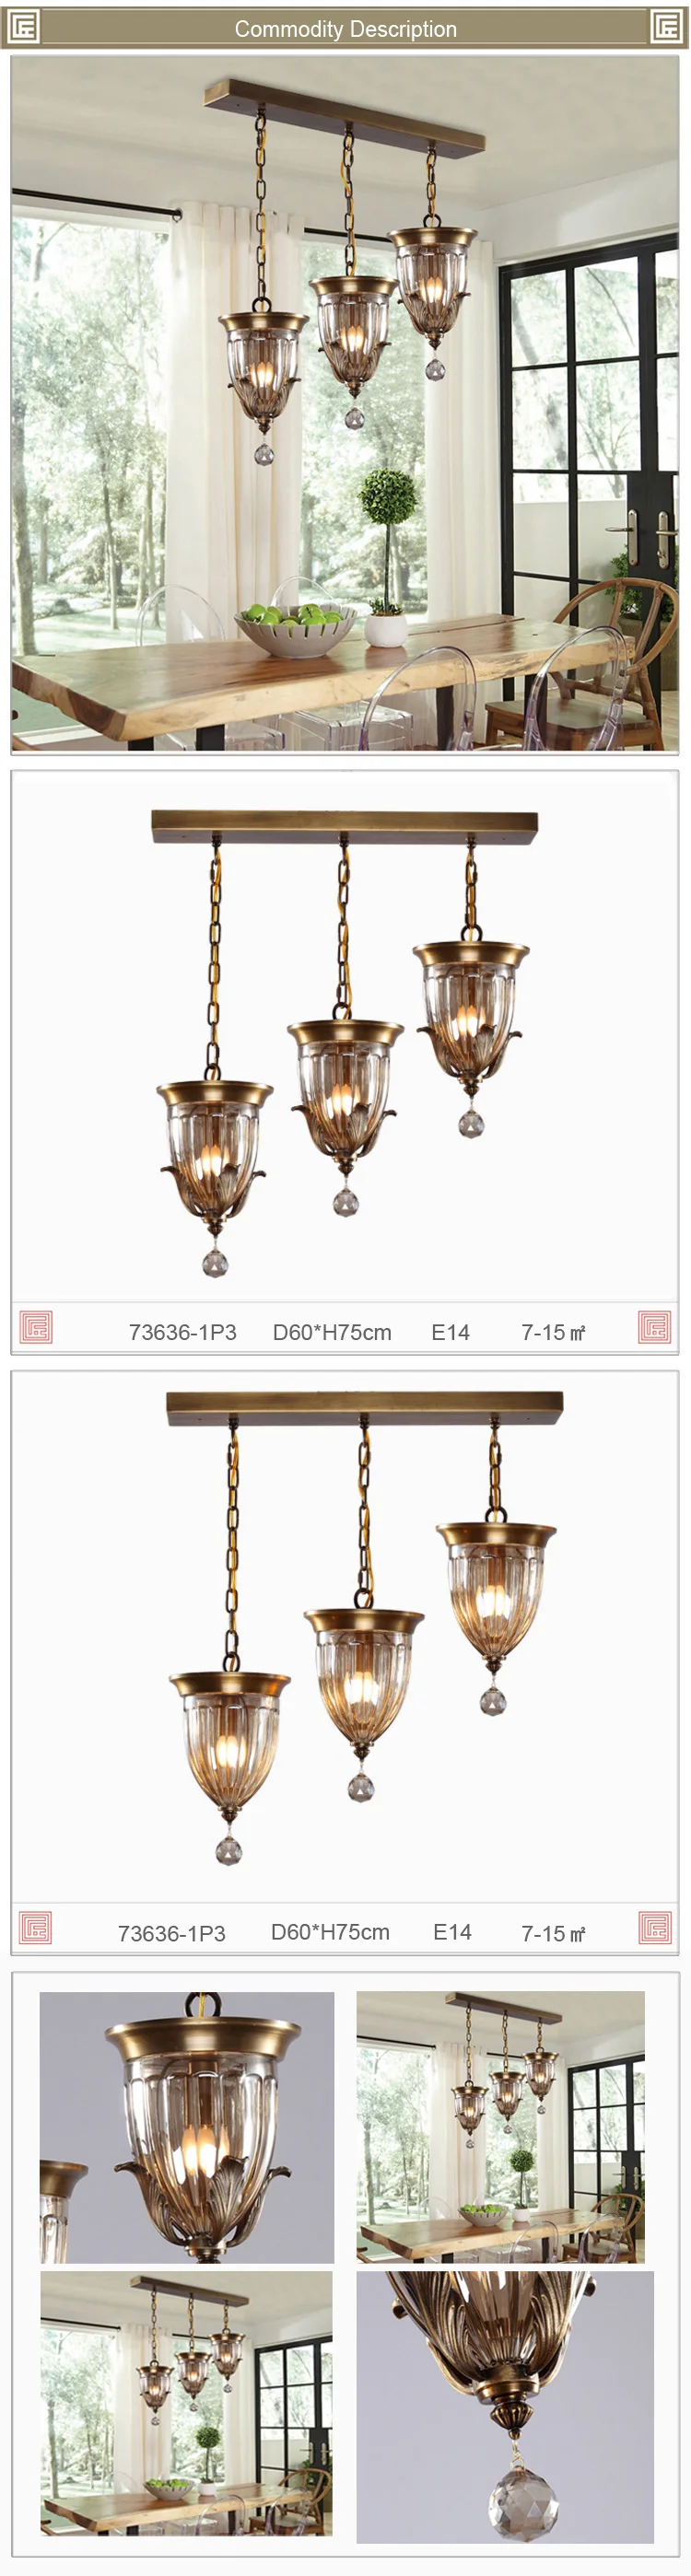 antique-brass-copper-chandelier-6.jpg